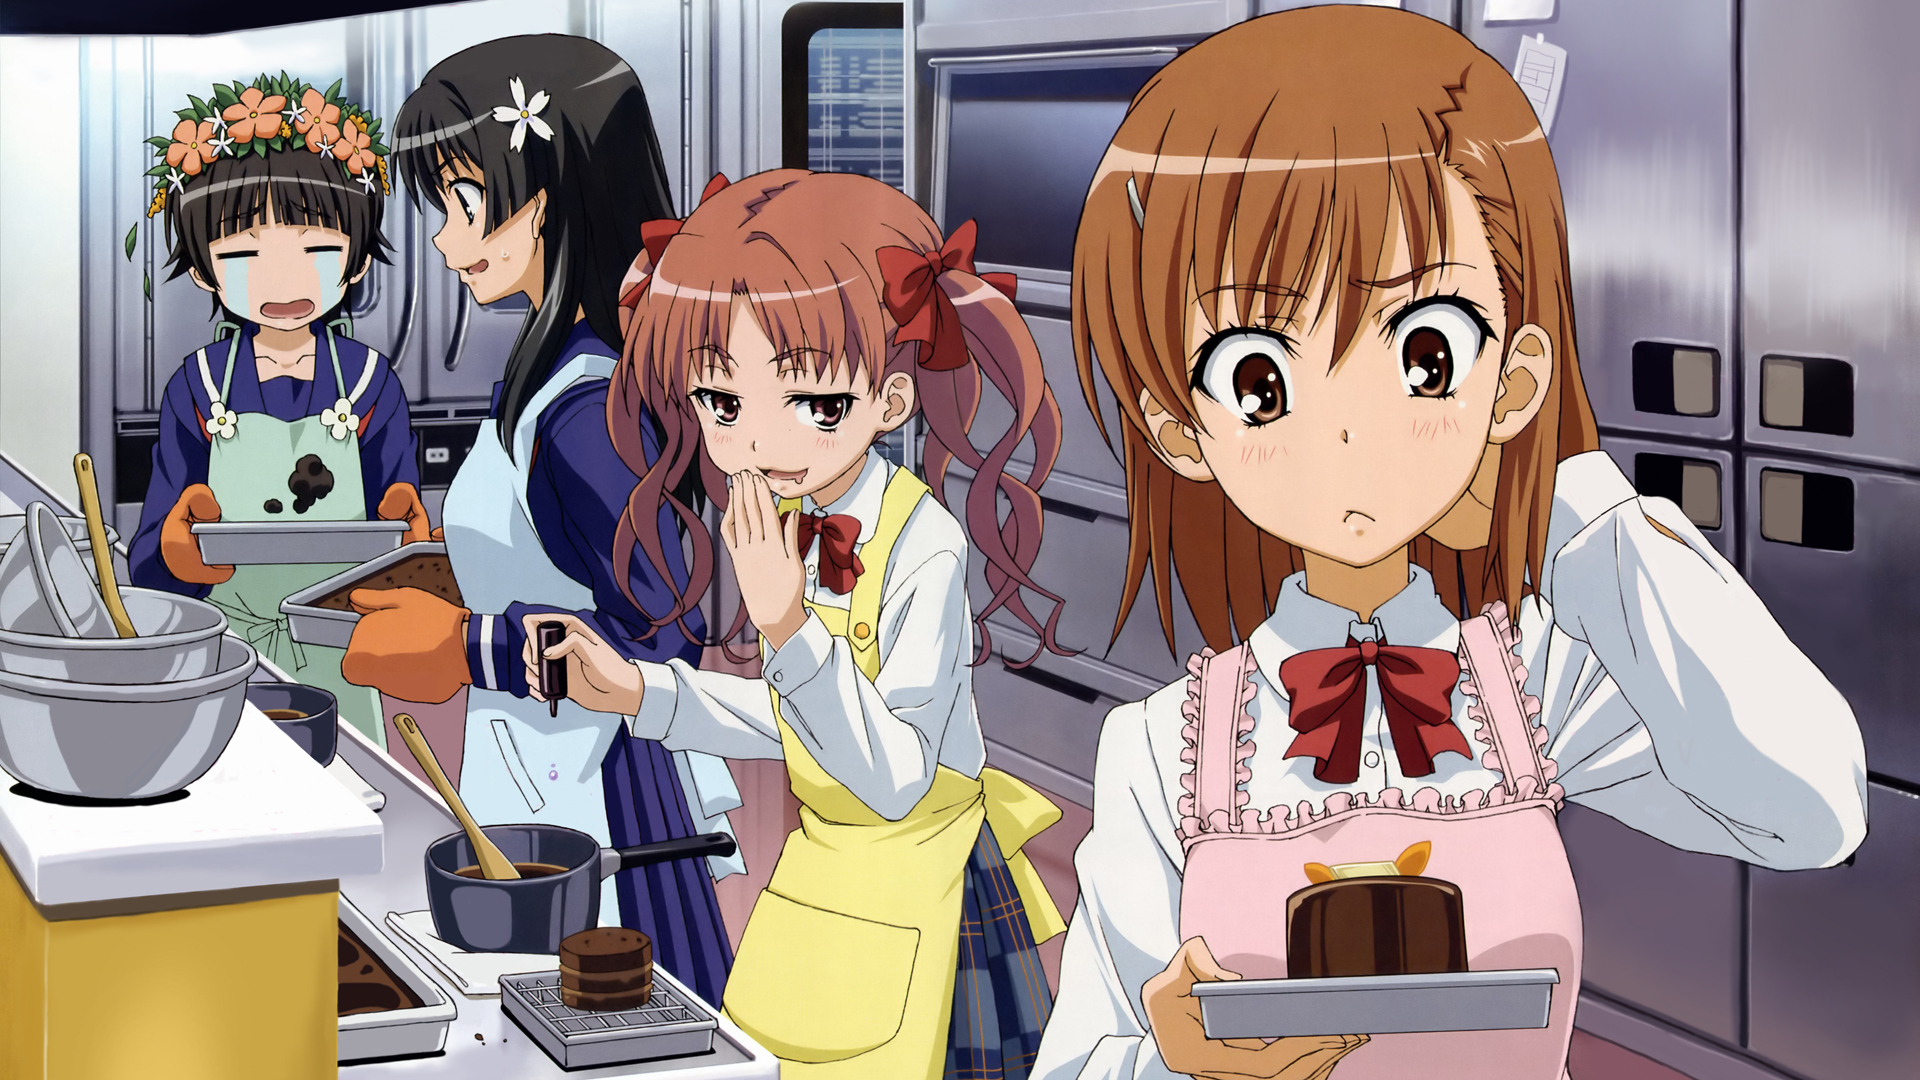 Misaka Mikoto, Toaru Kagaku no Railgun, Uiharu Kazari, anime girls - desktop wallpaper